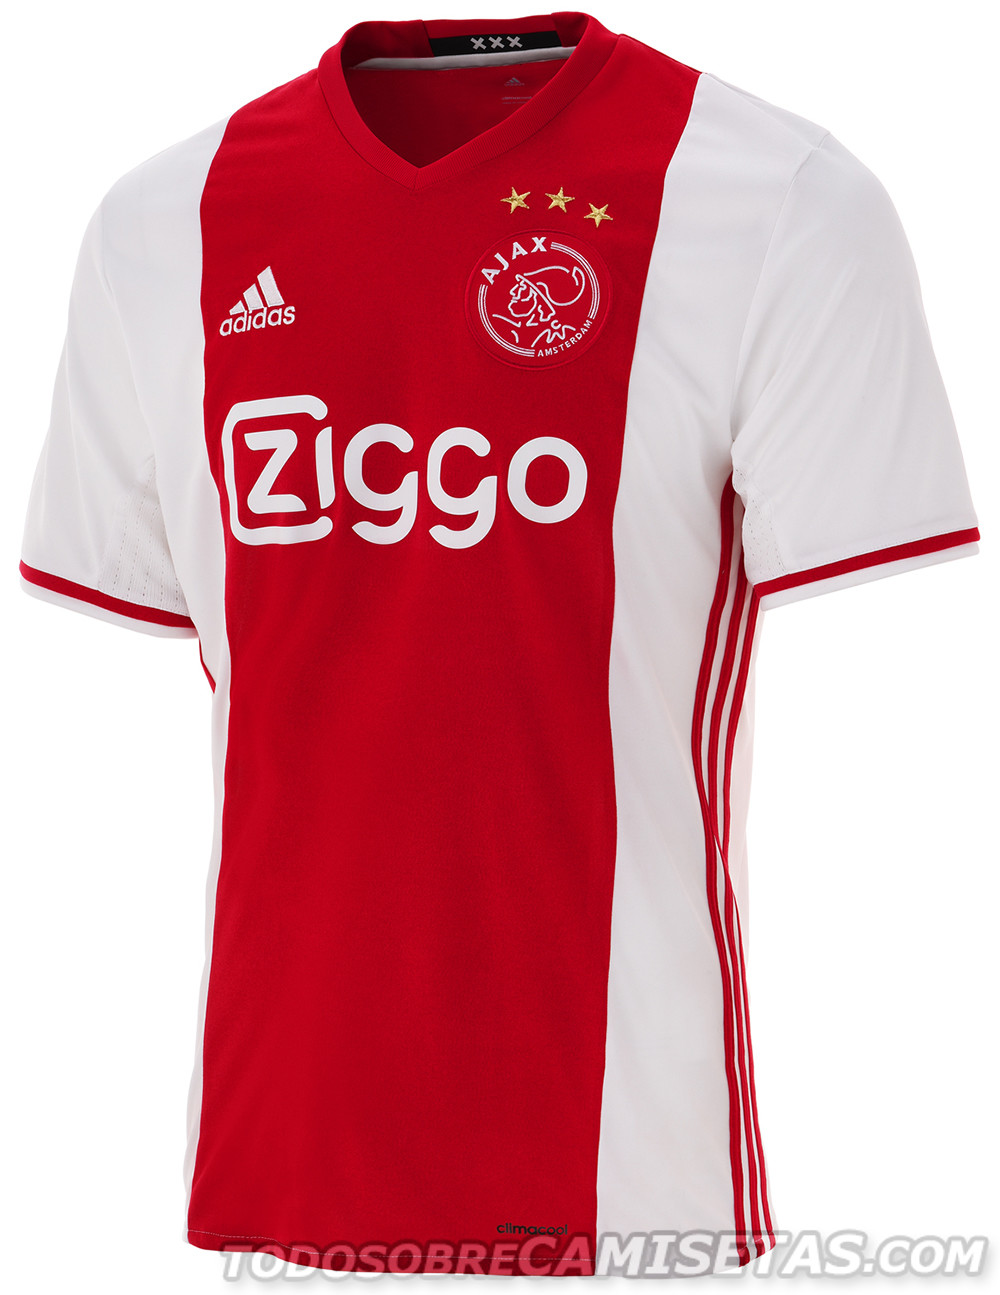 Ajax 2016-17 adidas Home Kit